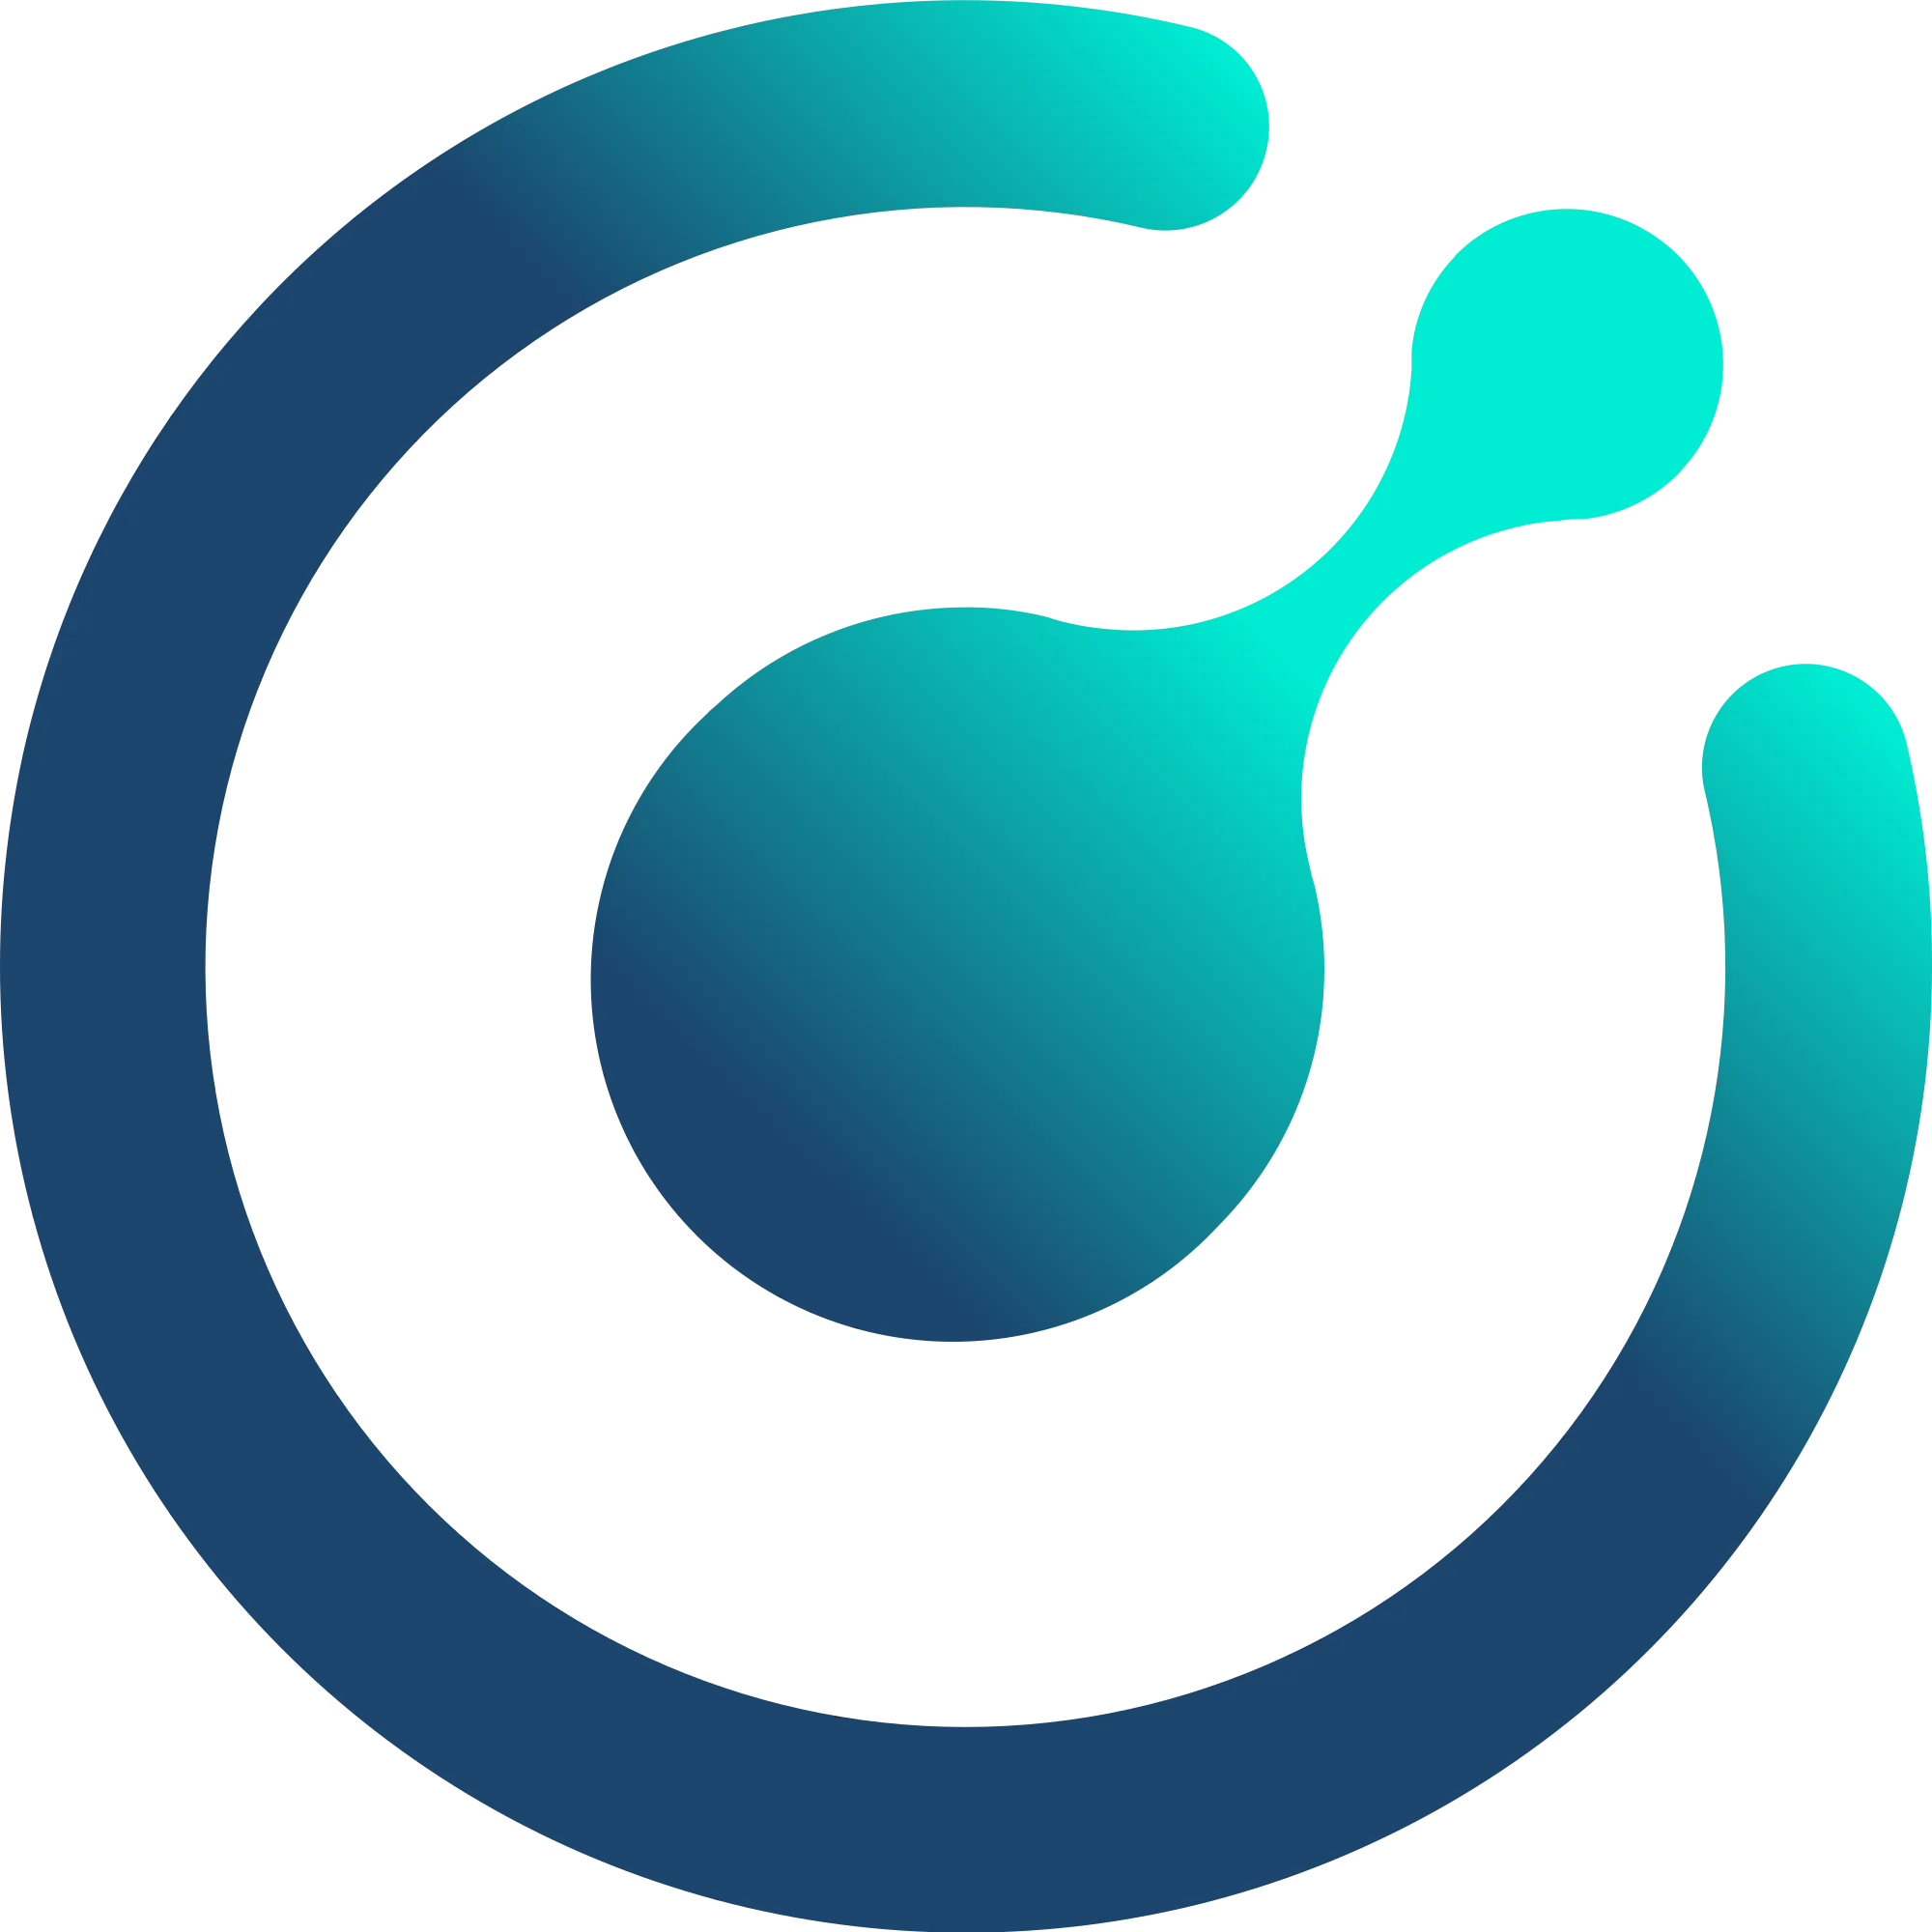 Komodo logo in png format